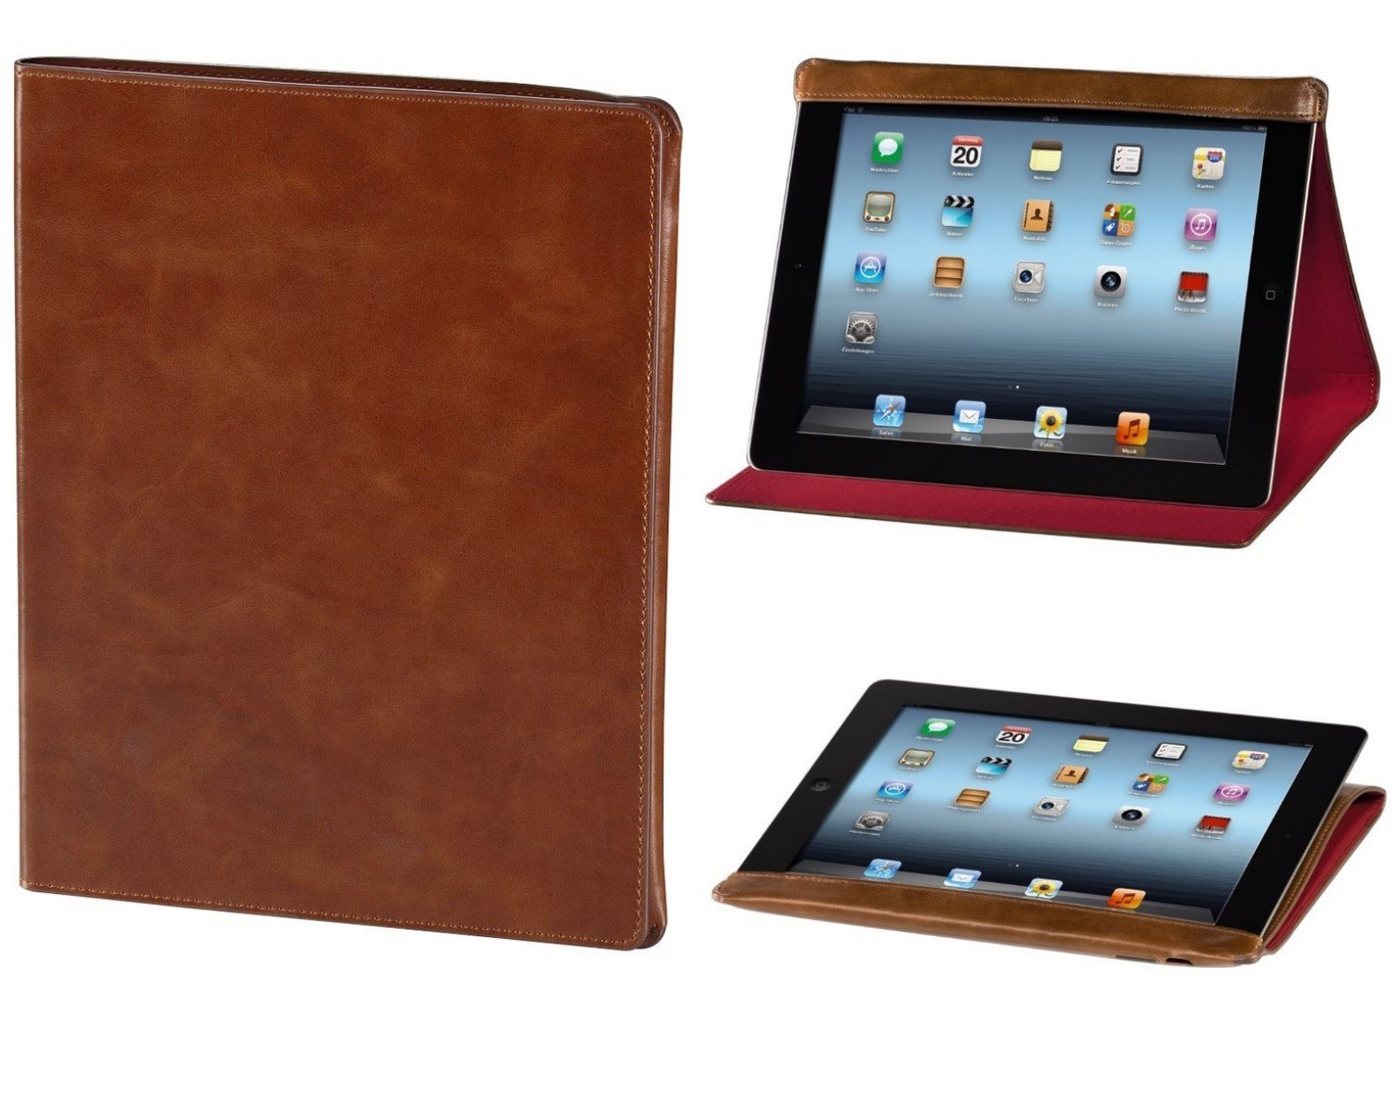 Hama Tablet-Hülle Leder-Tasche Smart Case Cover Schutz-Hülle, Klapp-Tasche für Apple iPad 4 3 4G 3G, Stand-Funktion von Hama